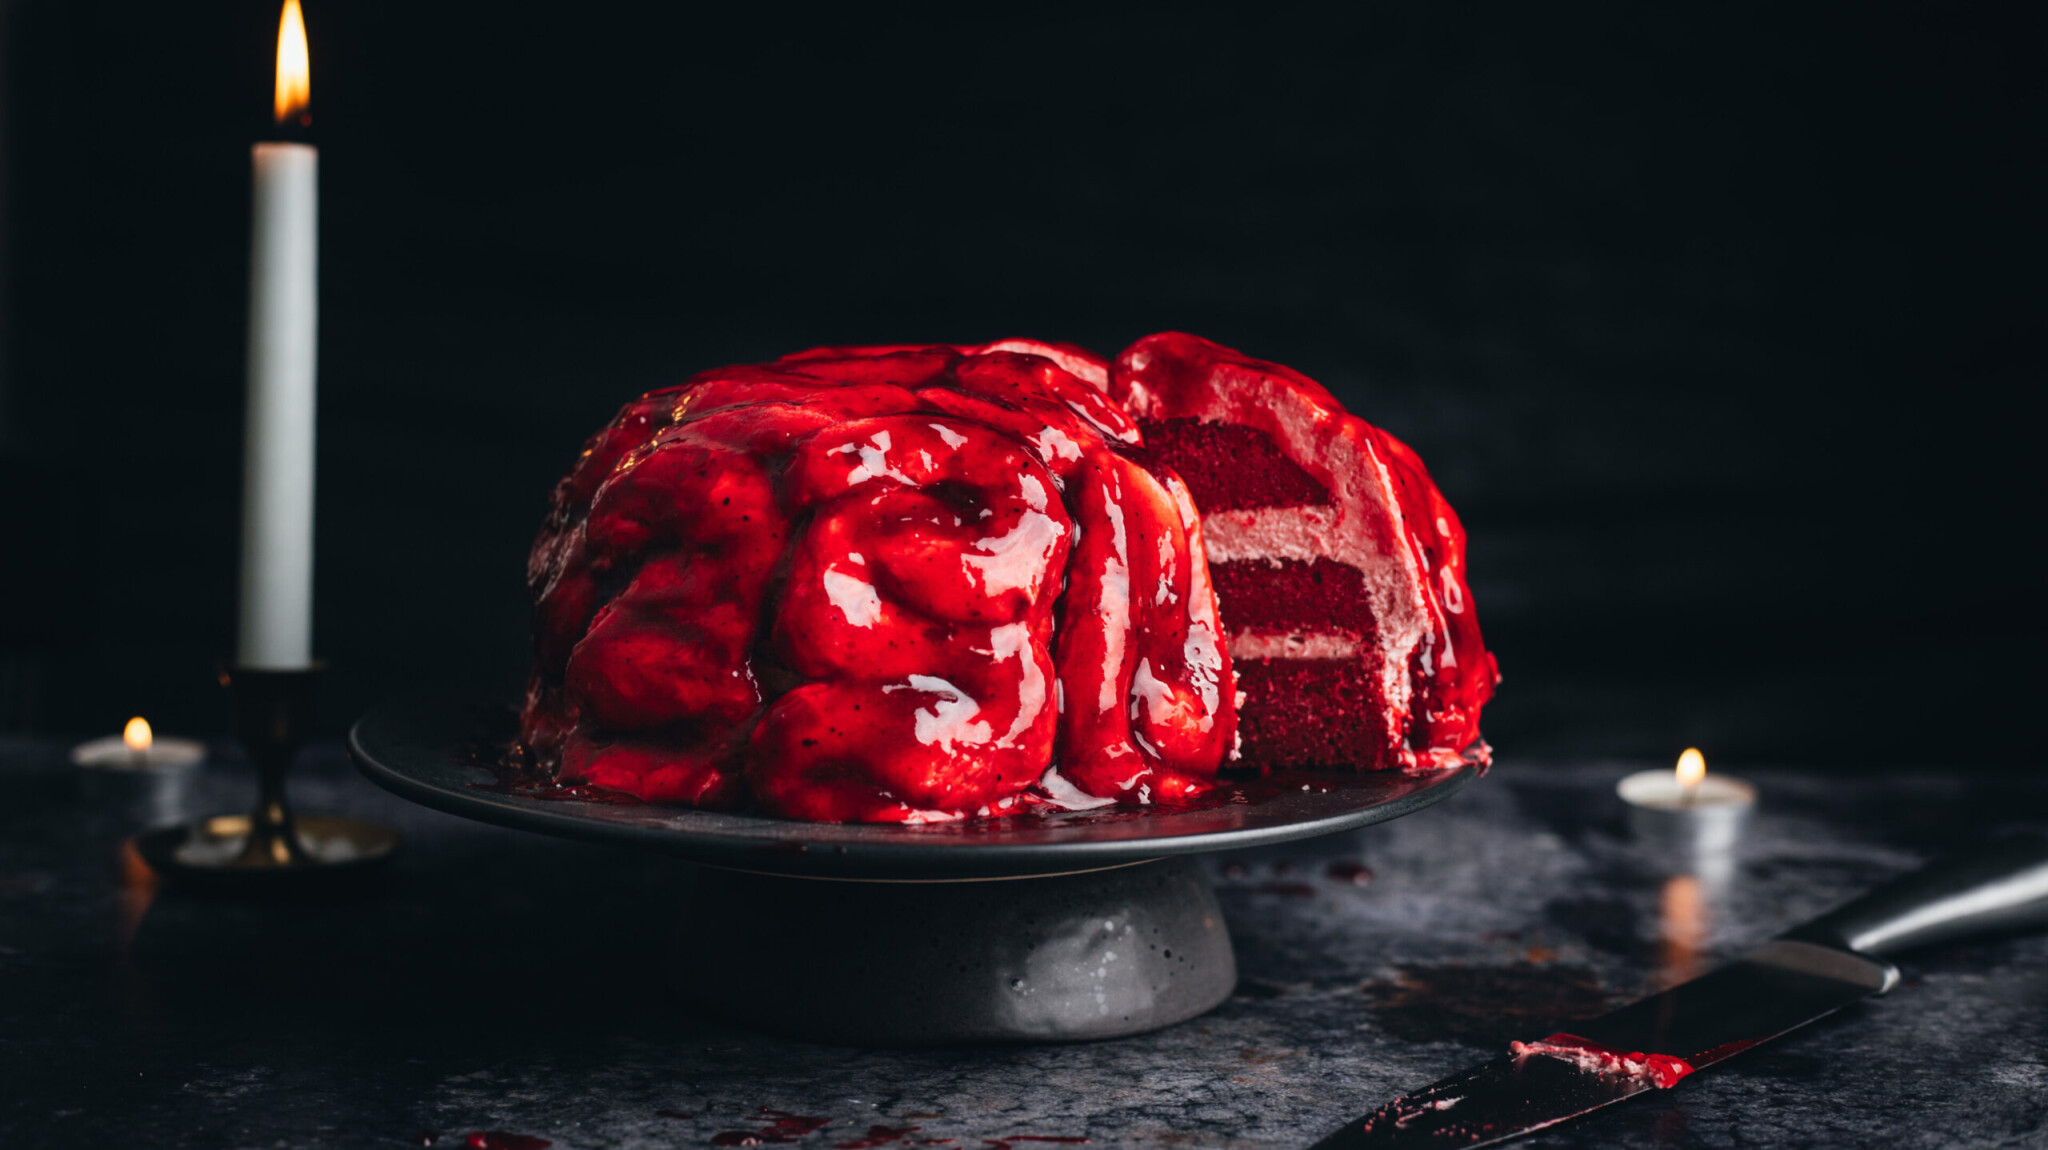 Mozek k nakousnutí. Upečte si temný & lahodný halloweenský dort